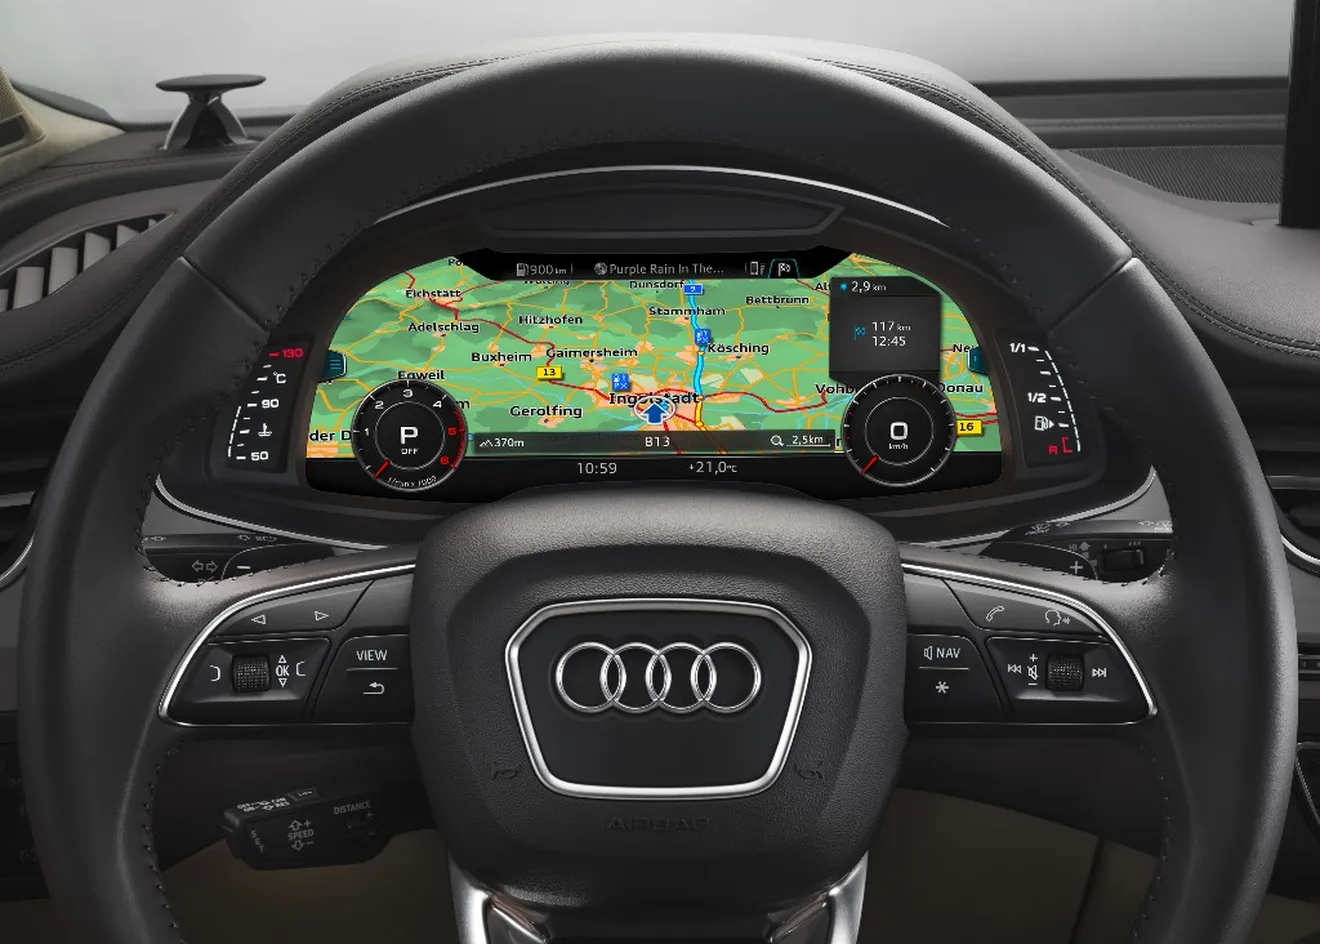 Así son los mapas de alta resolución en los sistemas de asistencia de Audi